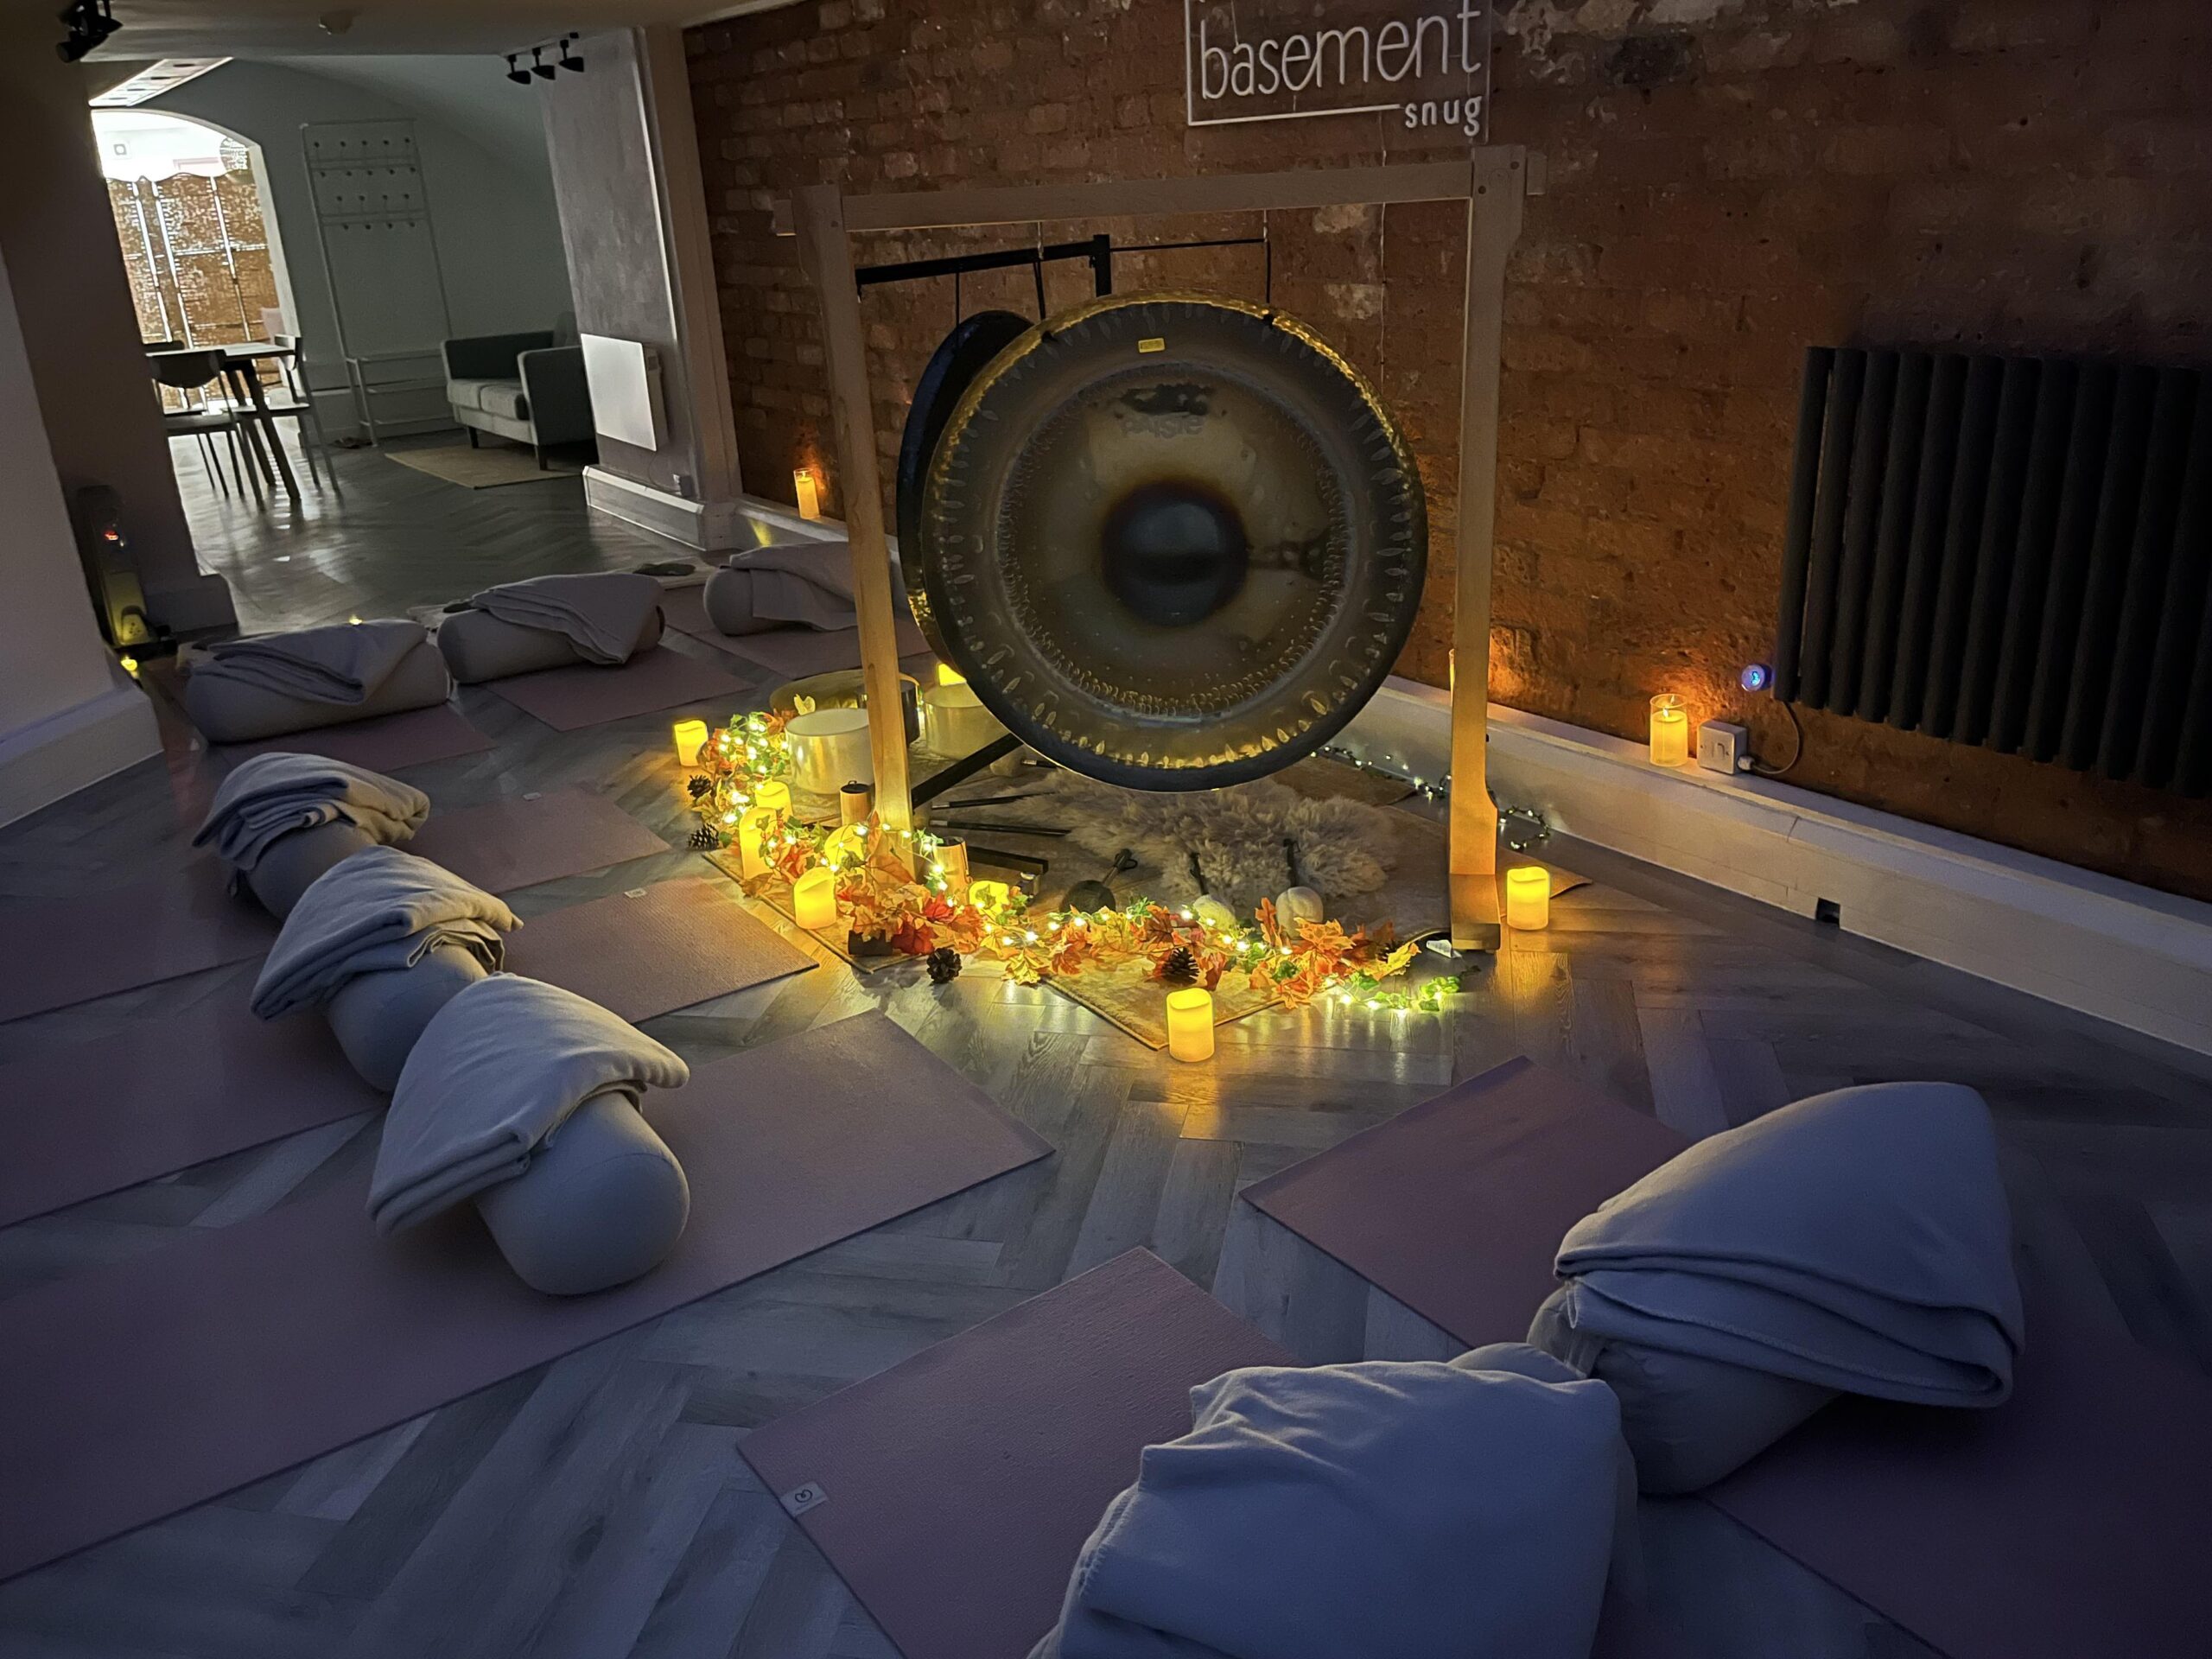 Image of gong setup for sound healing at Basement snug<br />
